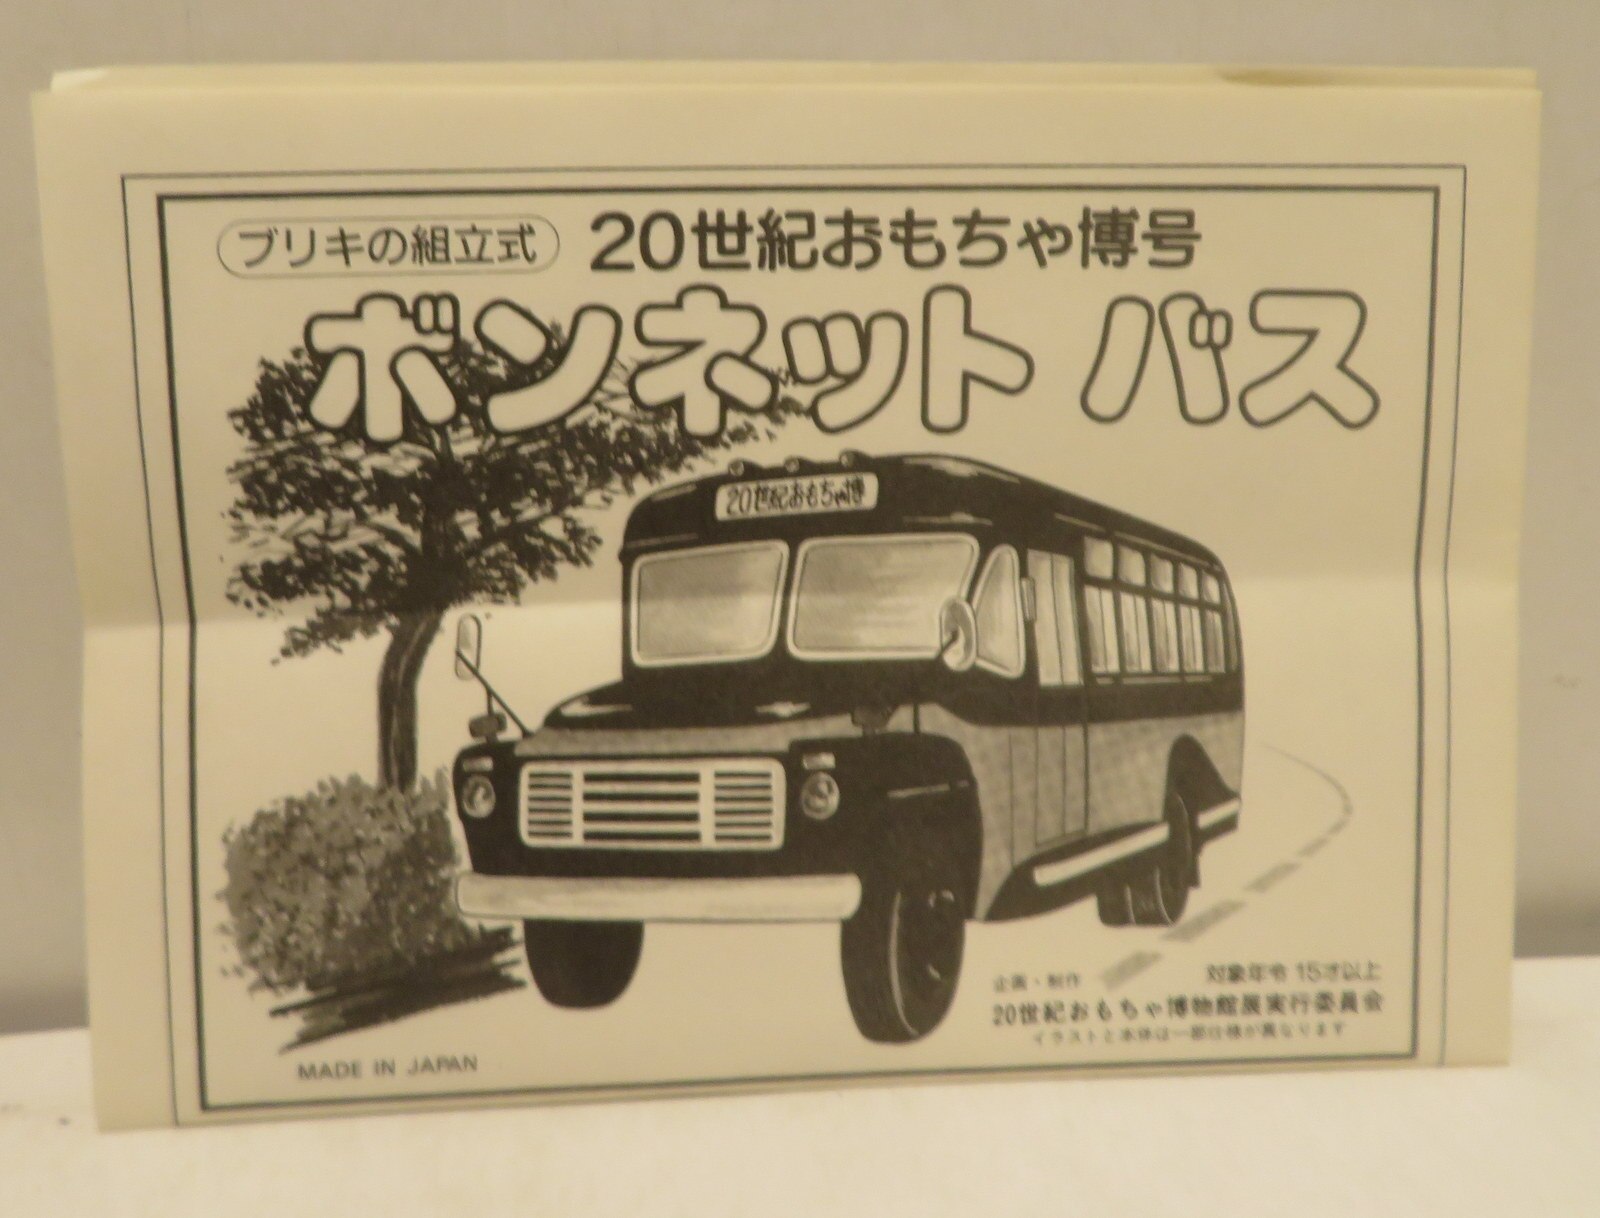 ブリキの組立式 20世紀おもちゃ博号 ボンネットバス - 模型